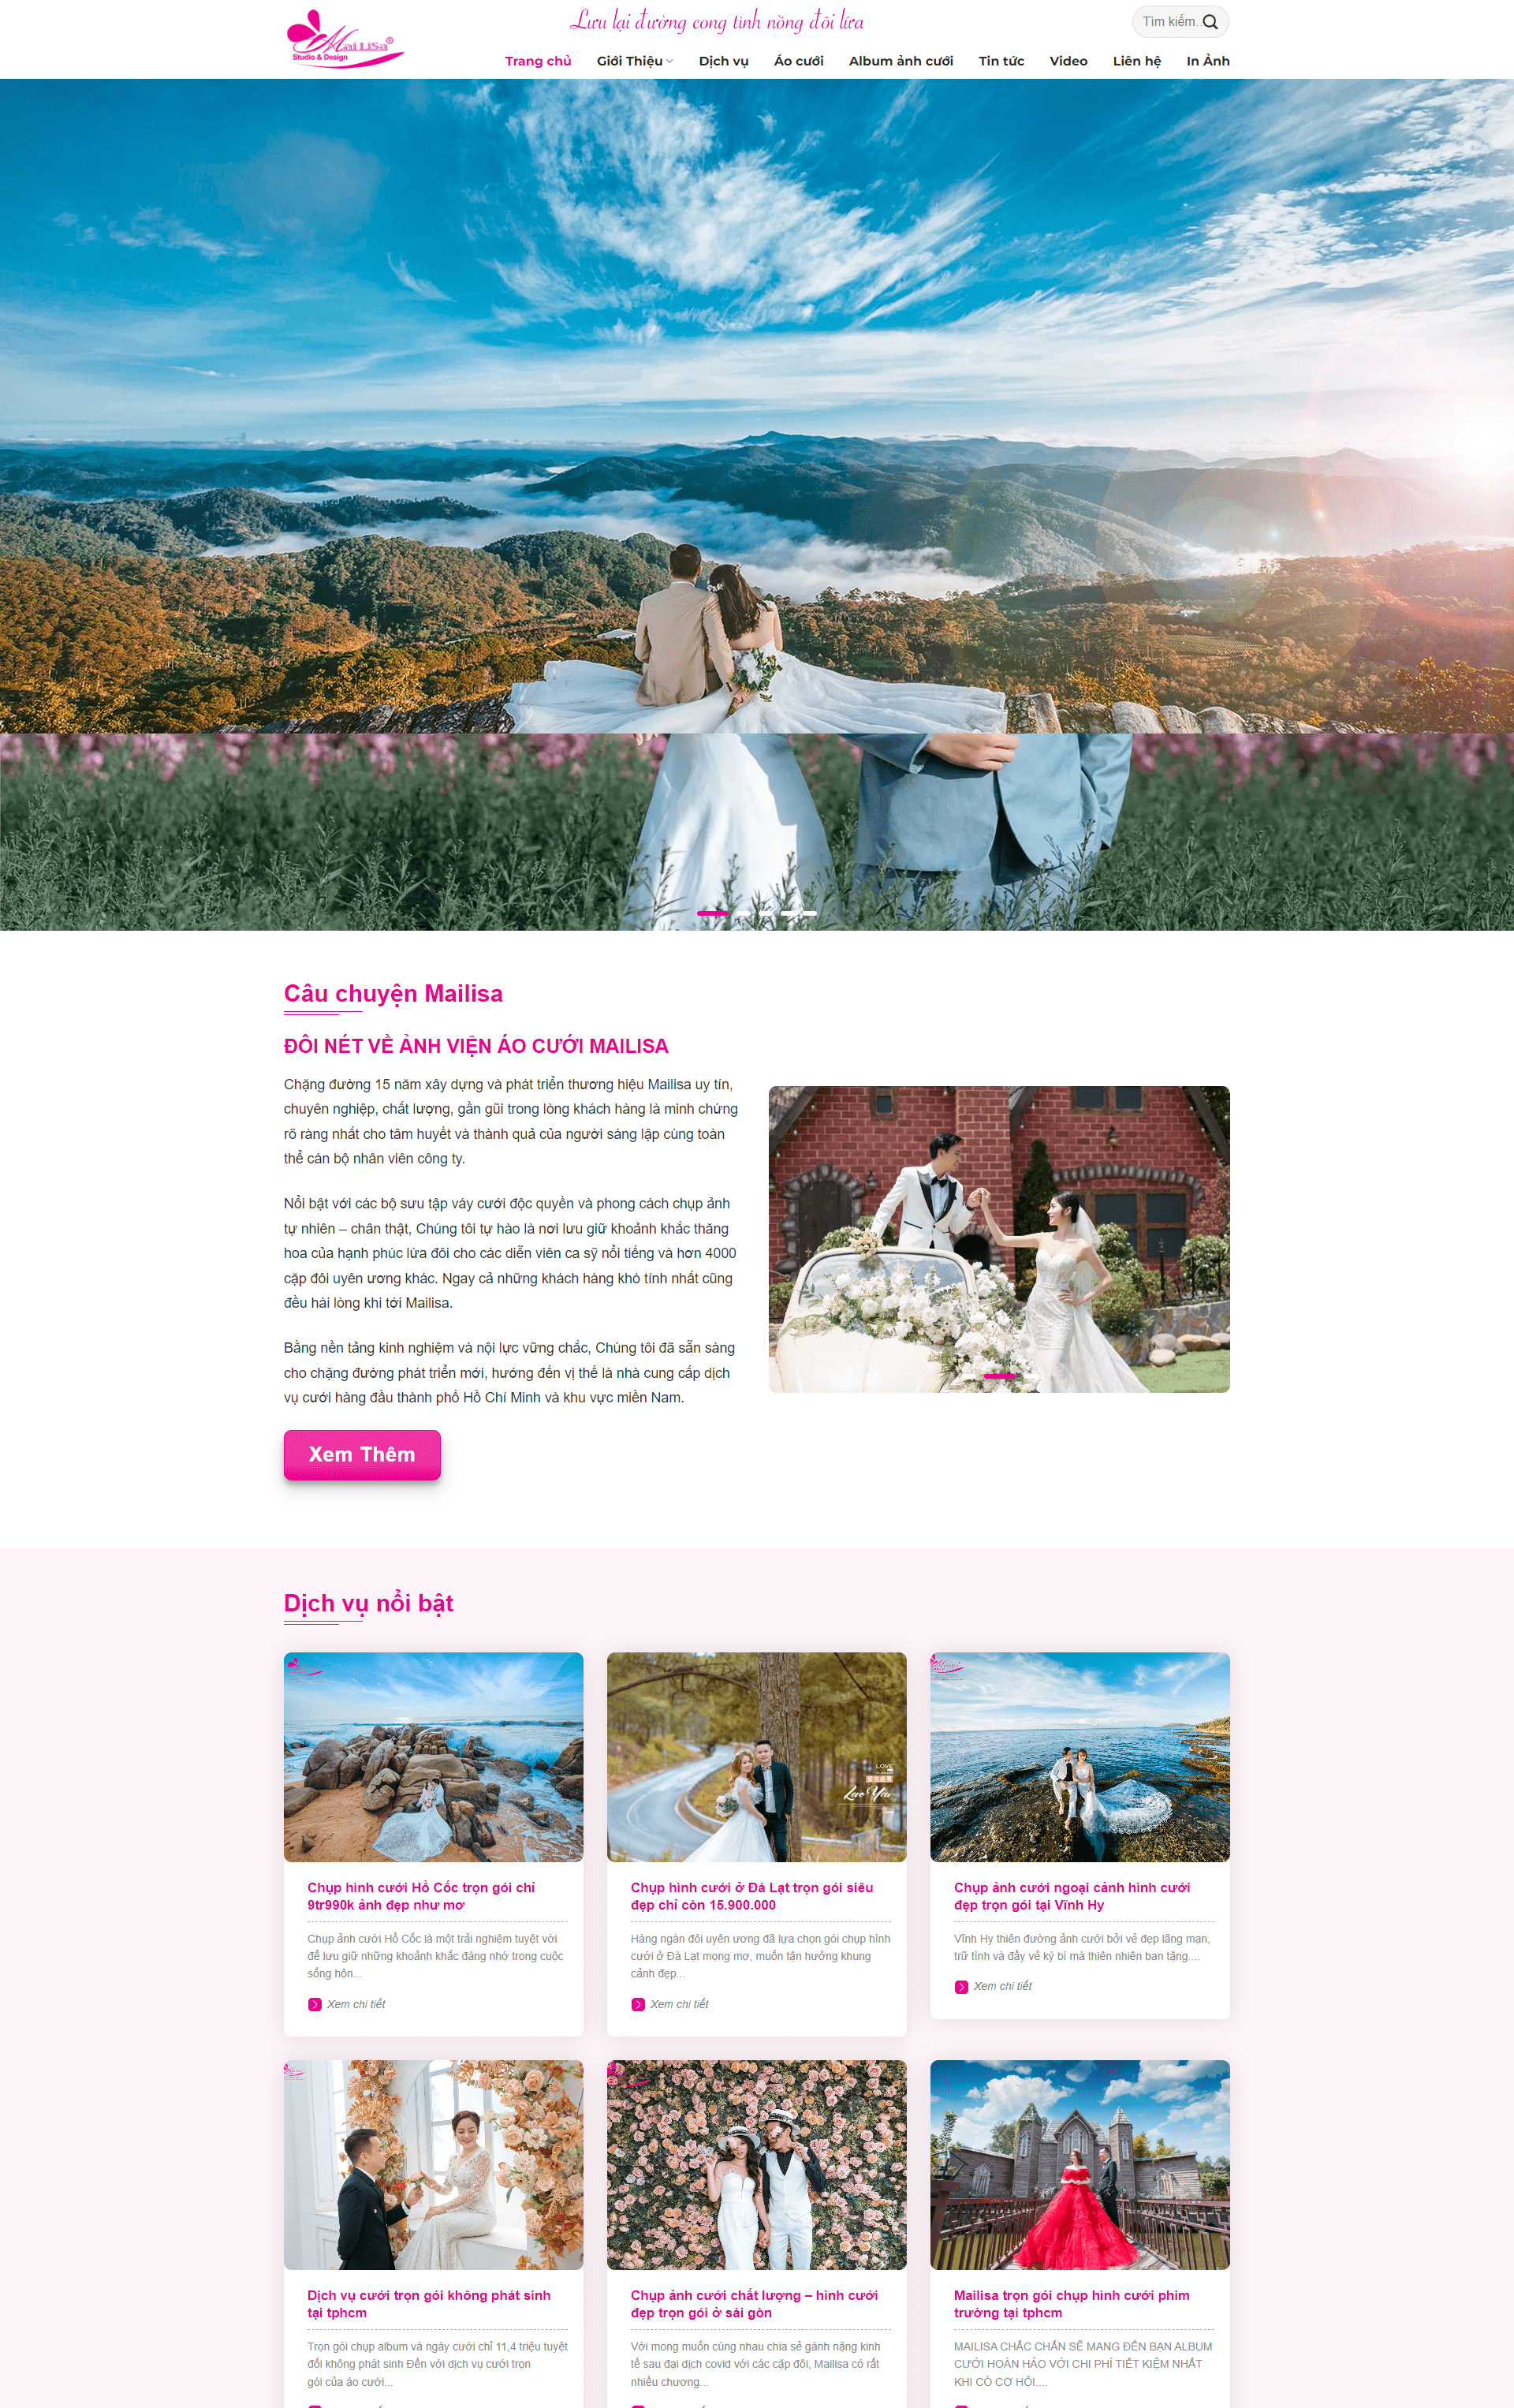 Tạo website ảnh viện áo cưới miễn phí tốt nhất